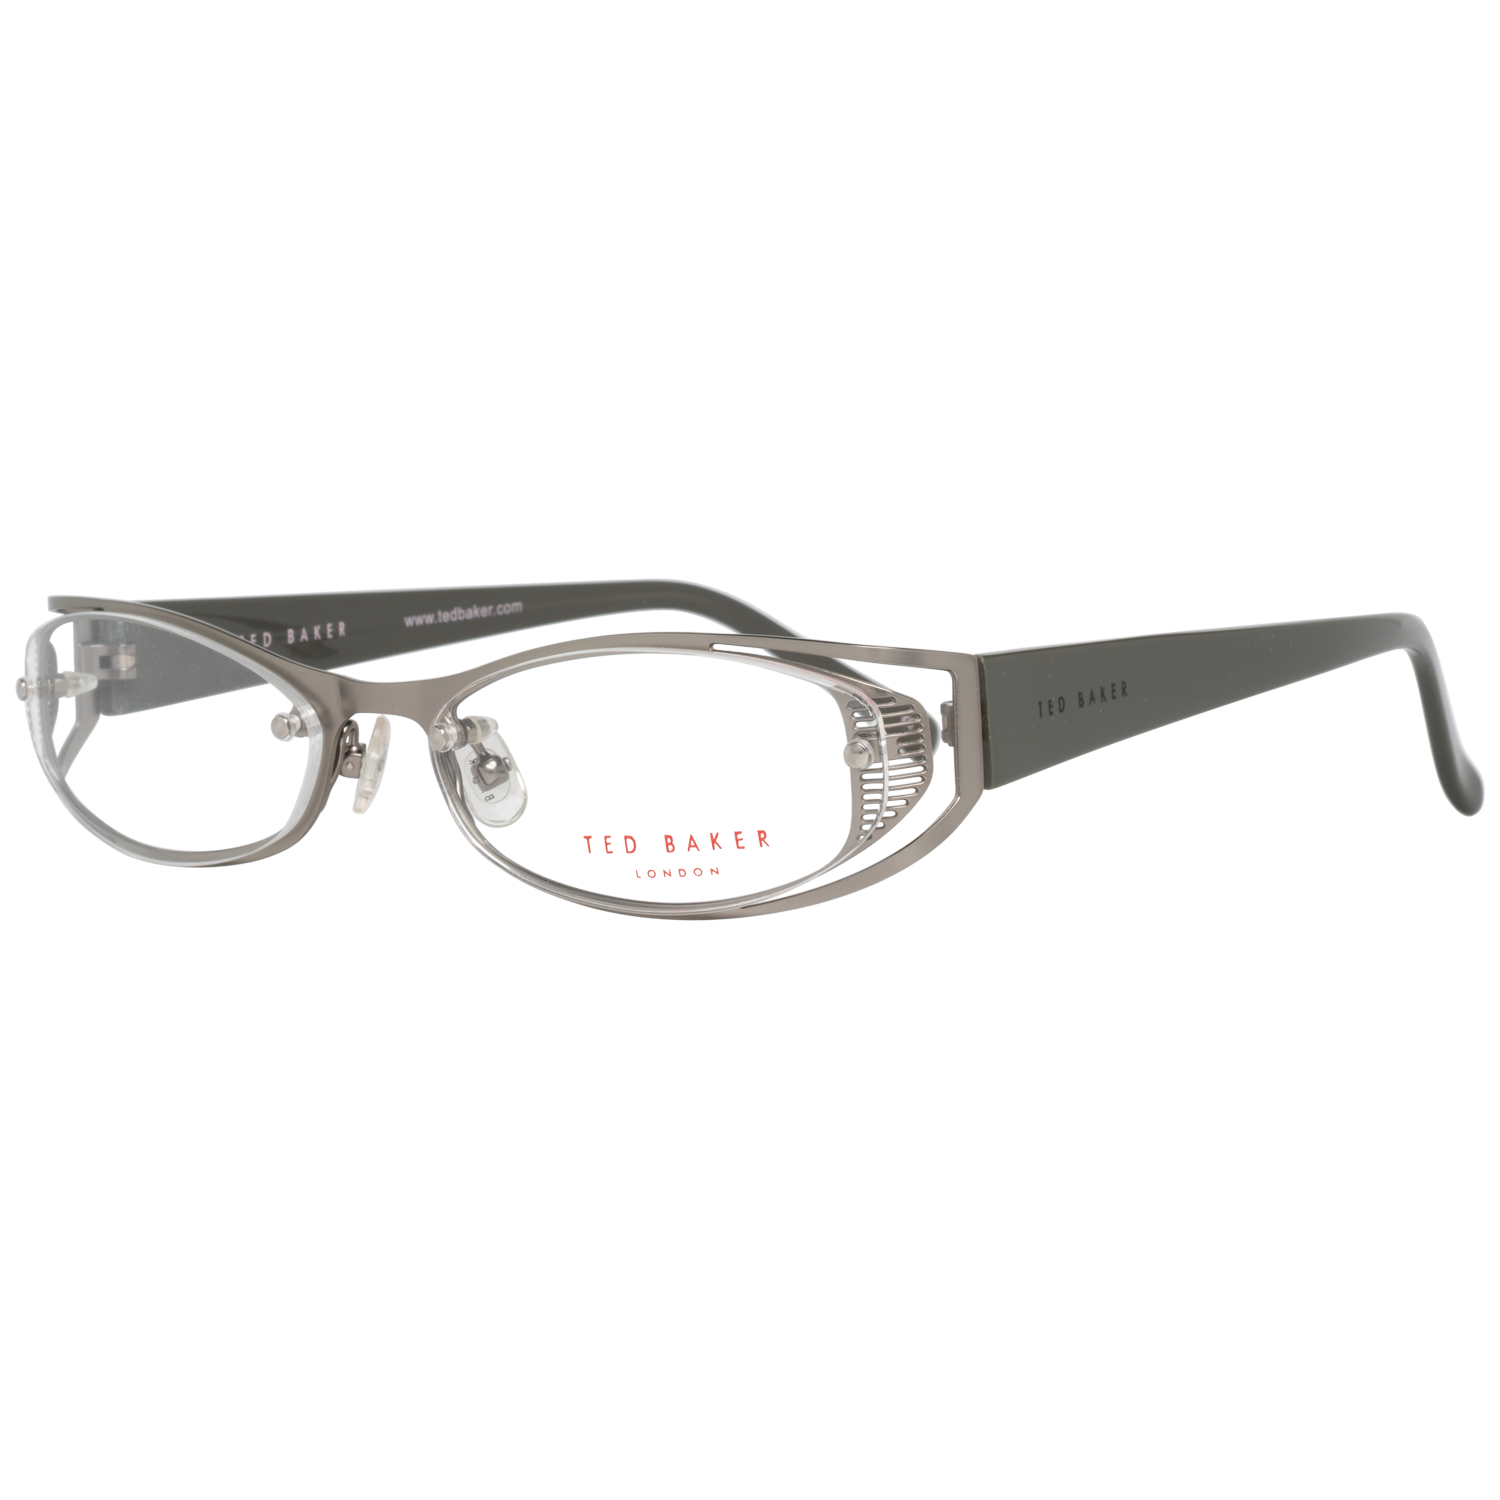 Ted Baker Frames Ted Baker Optical Frame Prescription Glasses TB2160 869 54 Eyeglasses Eyewear UK USA Australia 